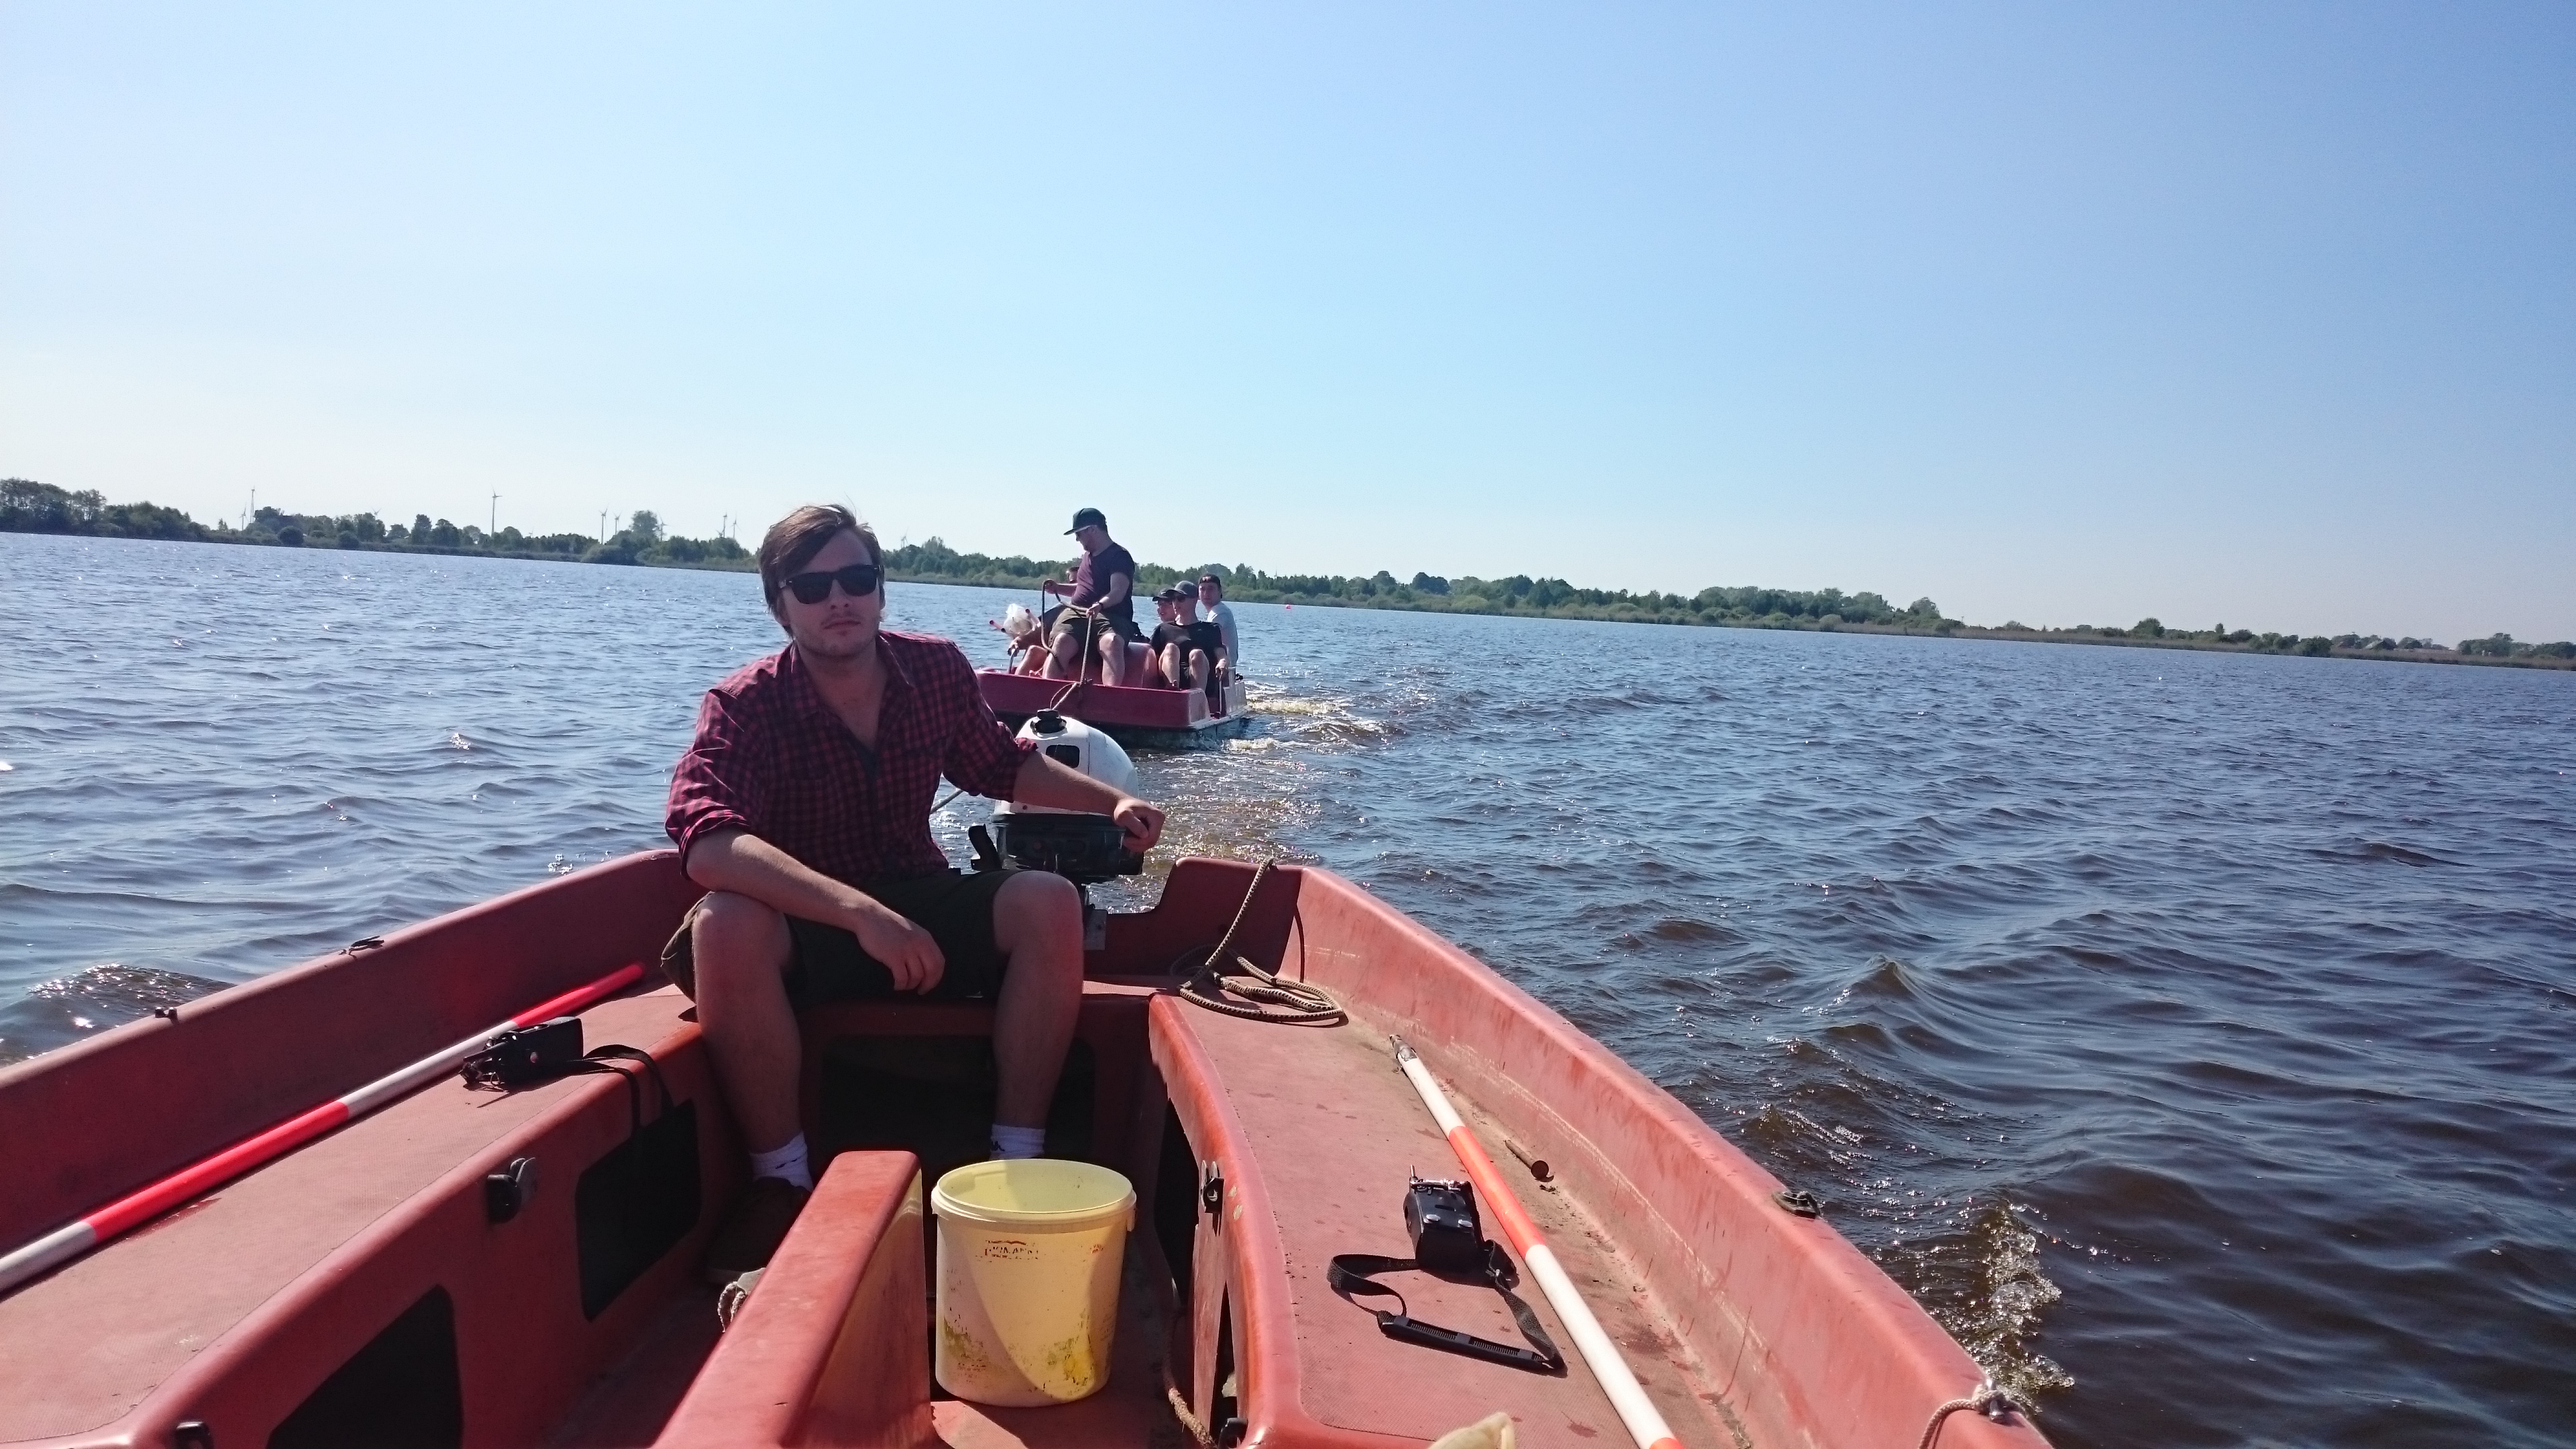 Im Vordergrund ist ein rotes Boot mit Heckmotor zu sehen, das eine Person steuert. Im Hintergrund ist ein kleines Boot mit mehreren Studierenden zu sehen, das vom Motorboot gezogen wird.